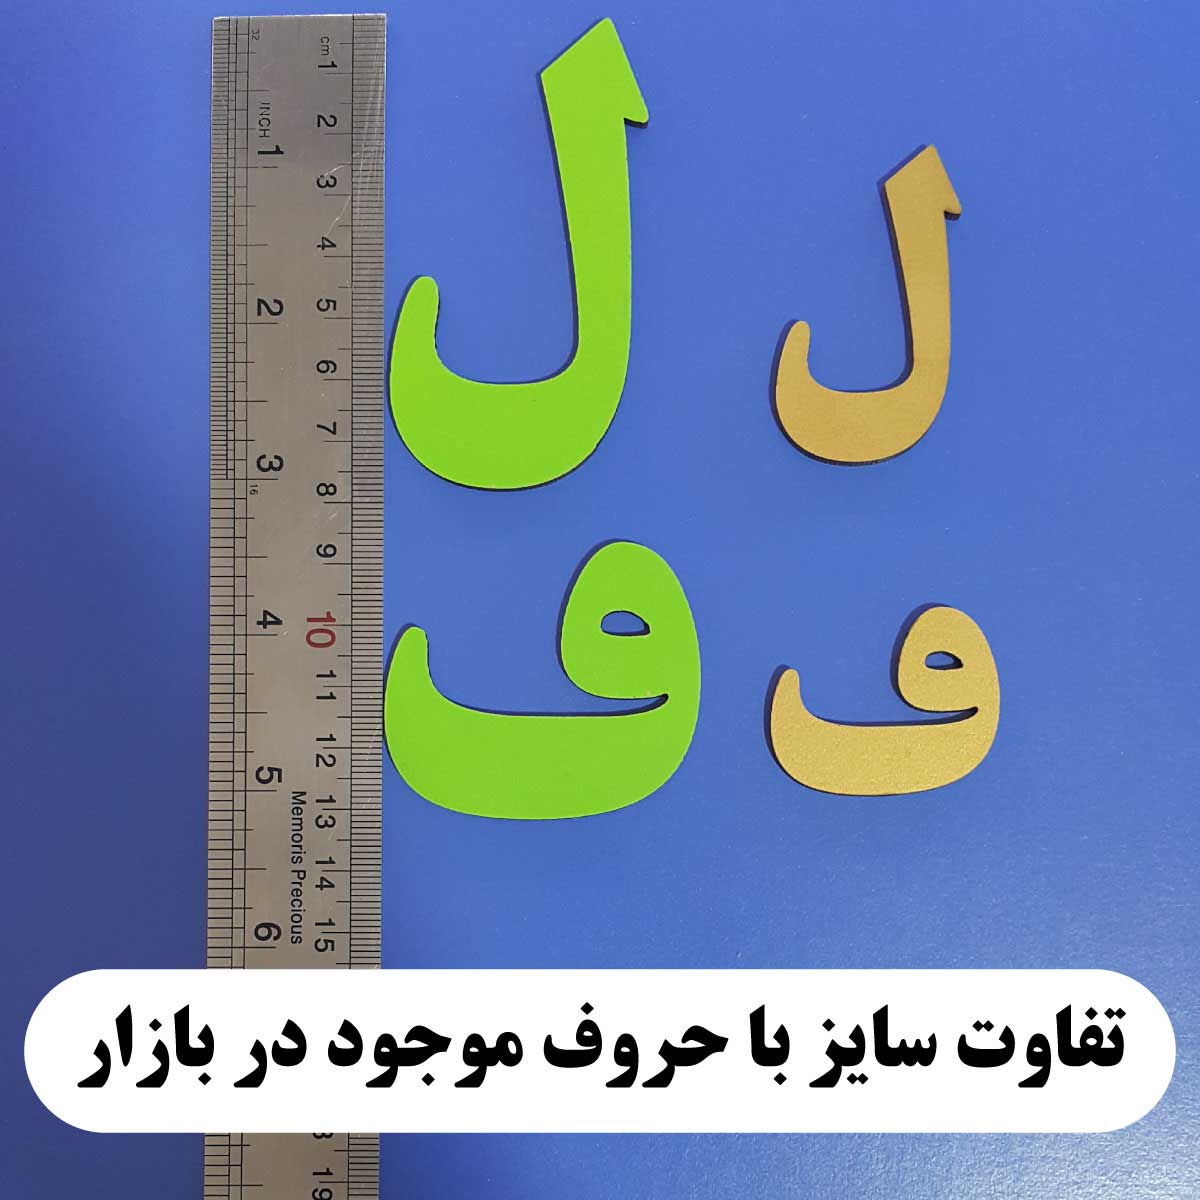 آموزش الفبای فارسی کودکان